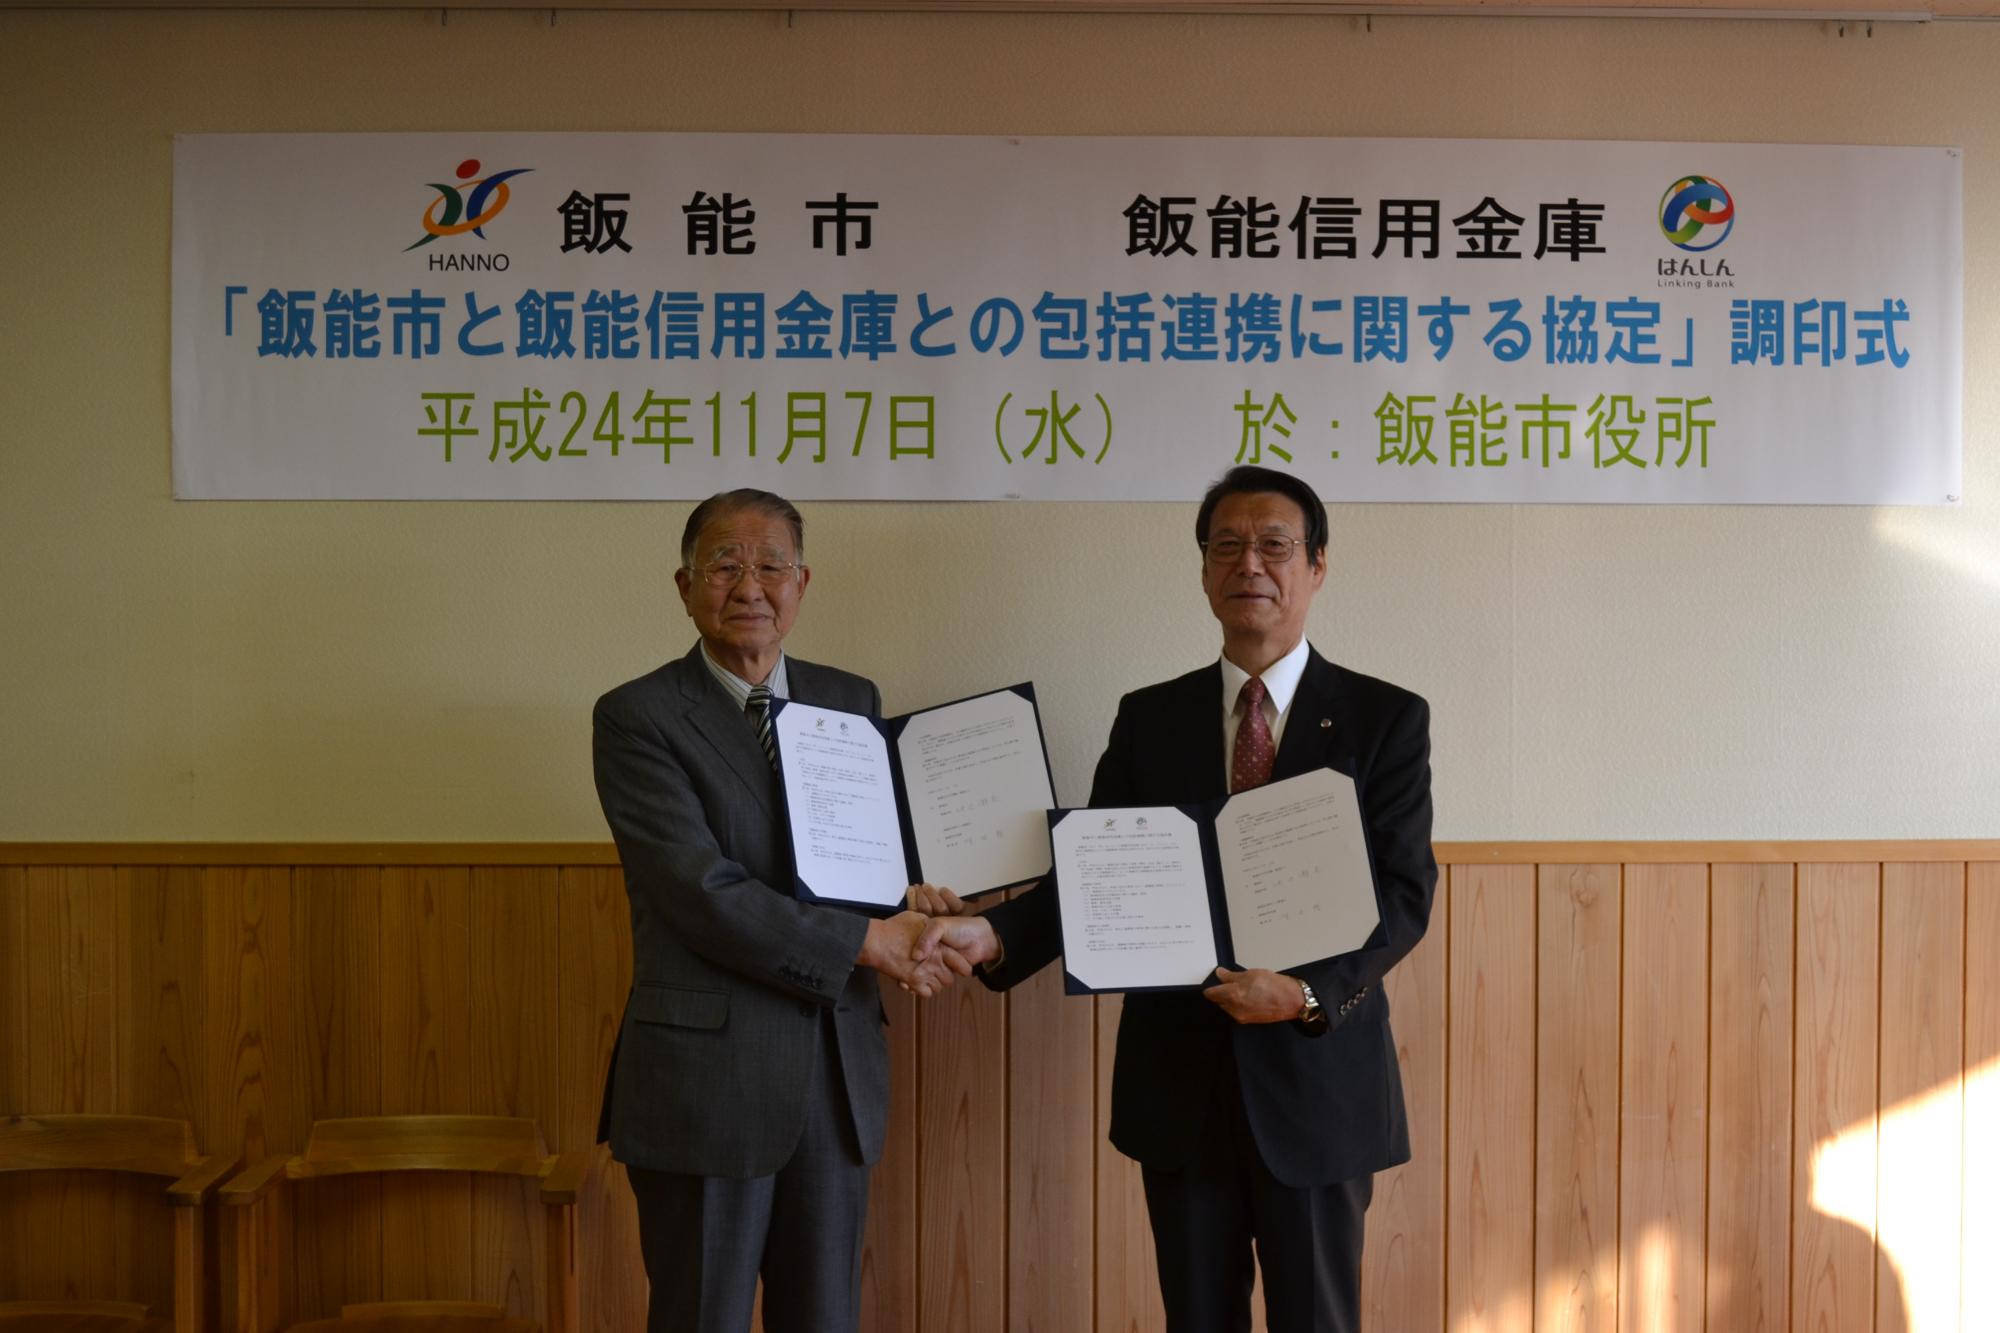 市長と飯能信用金庫理事長が協定書を手に持ち並んで撮影している写真